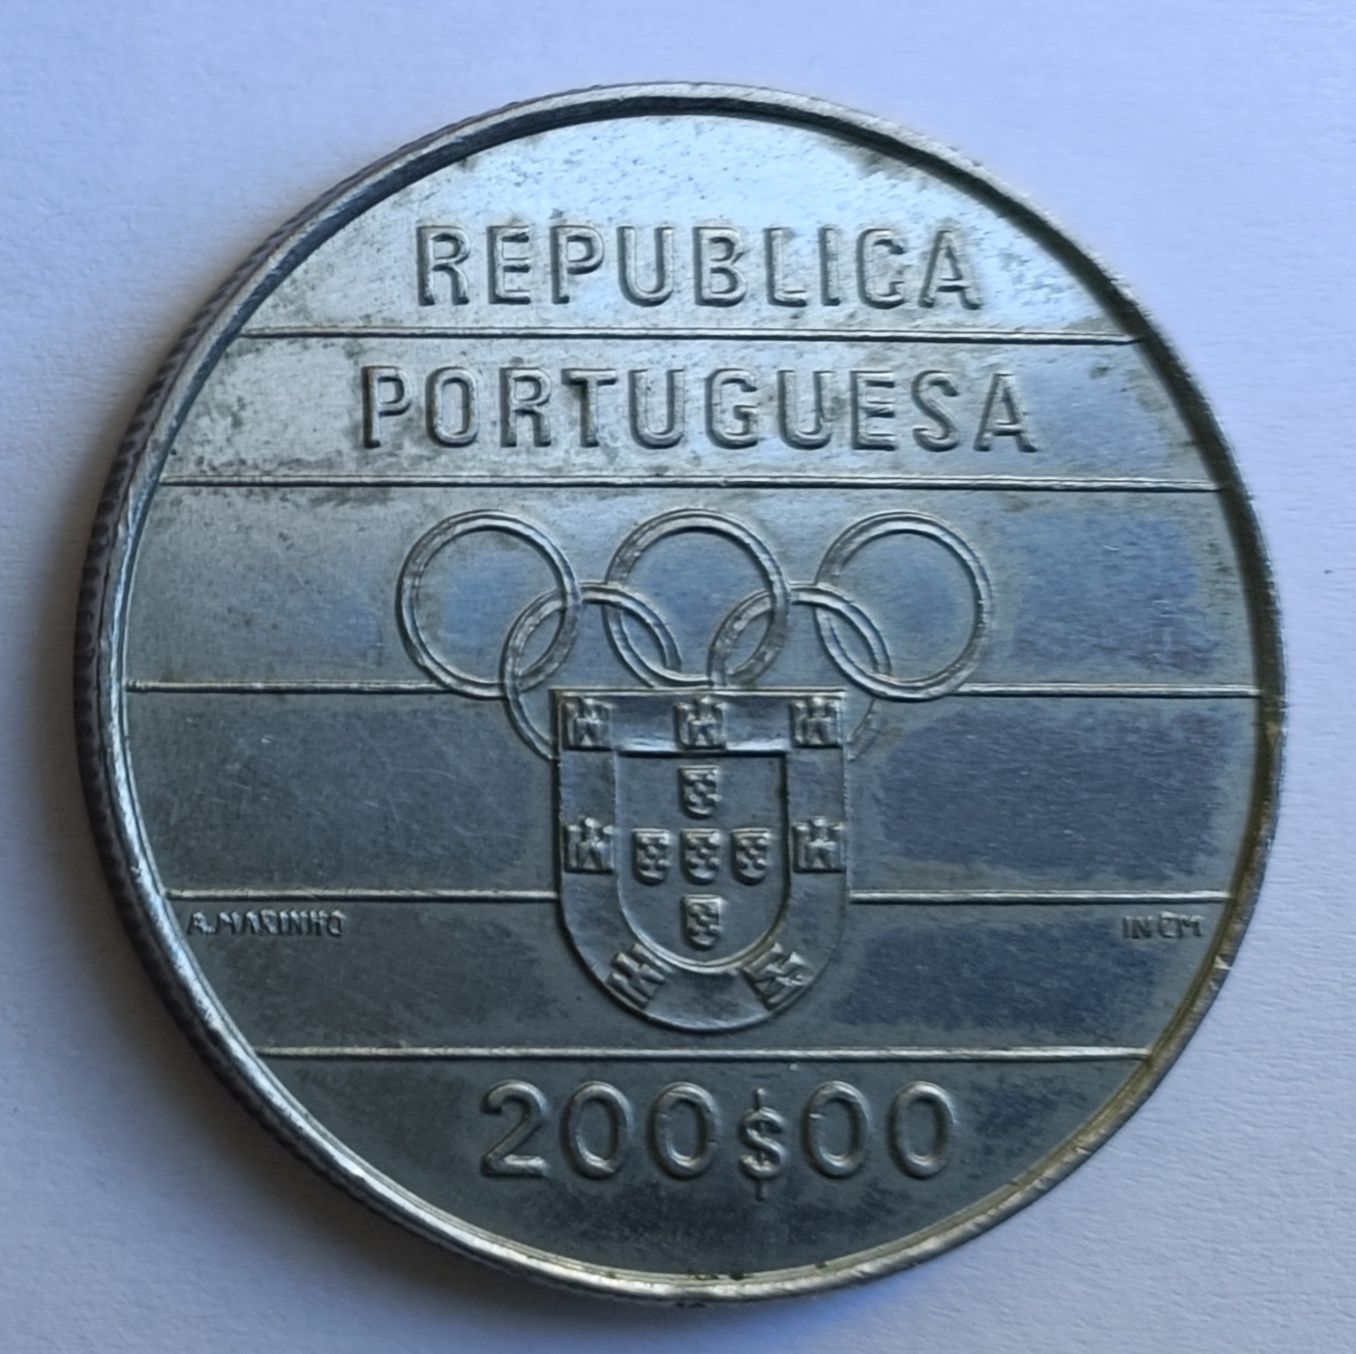 Moedas de Portugal. Escudo. Comemorativas de 100$00 e 200$00.